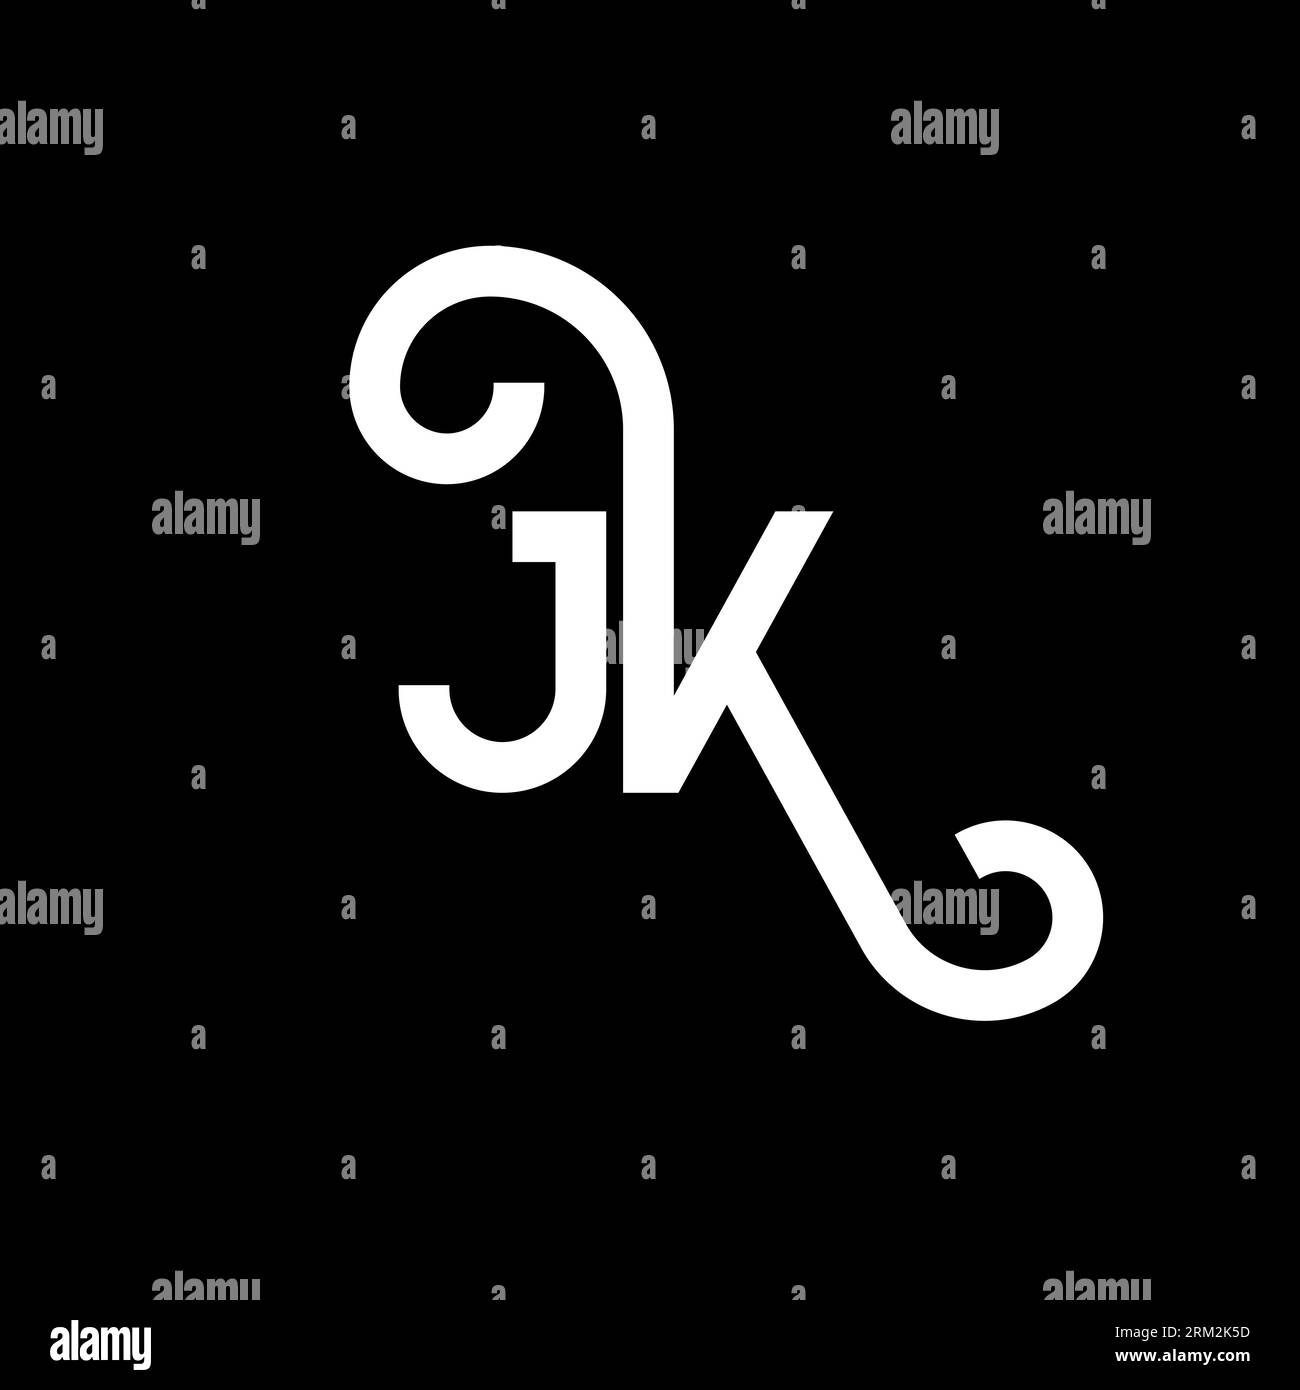 Jk Letter Logo Design On Black Background Jk Creative Initials Letter Logo Concept Jk Letter